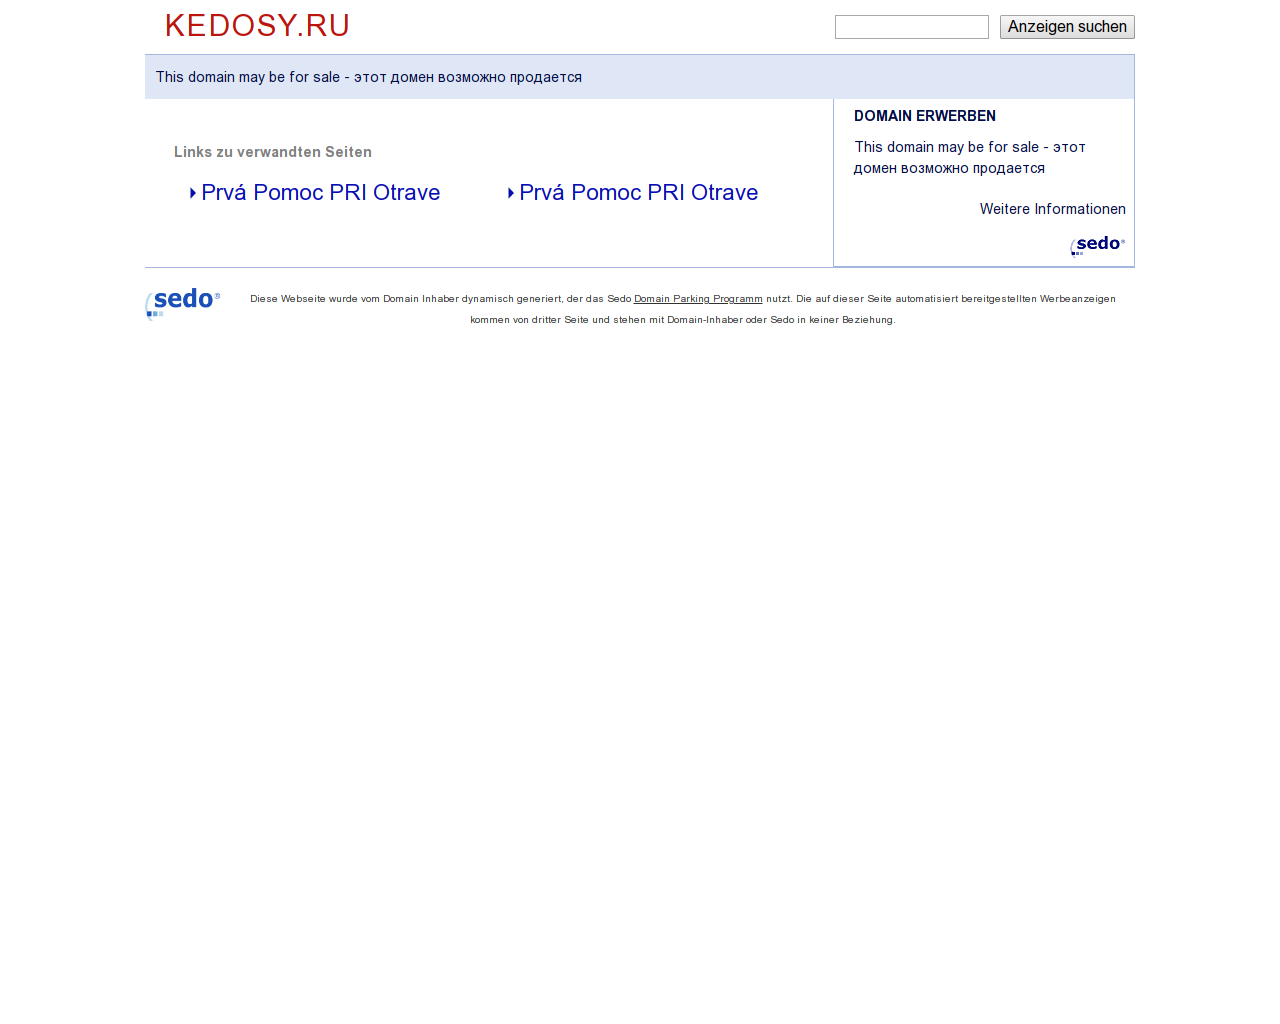 Изображение сайта kedosy.ru в разрешении 1280x1024